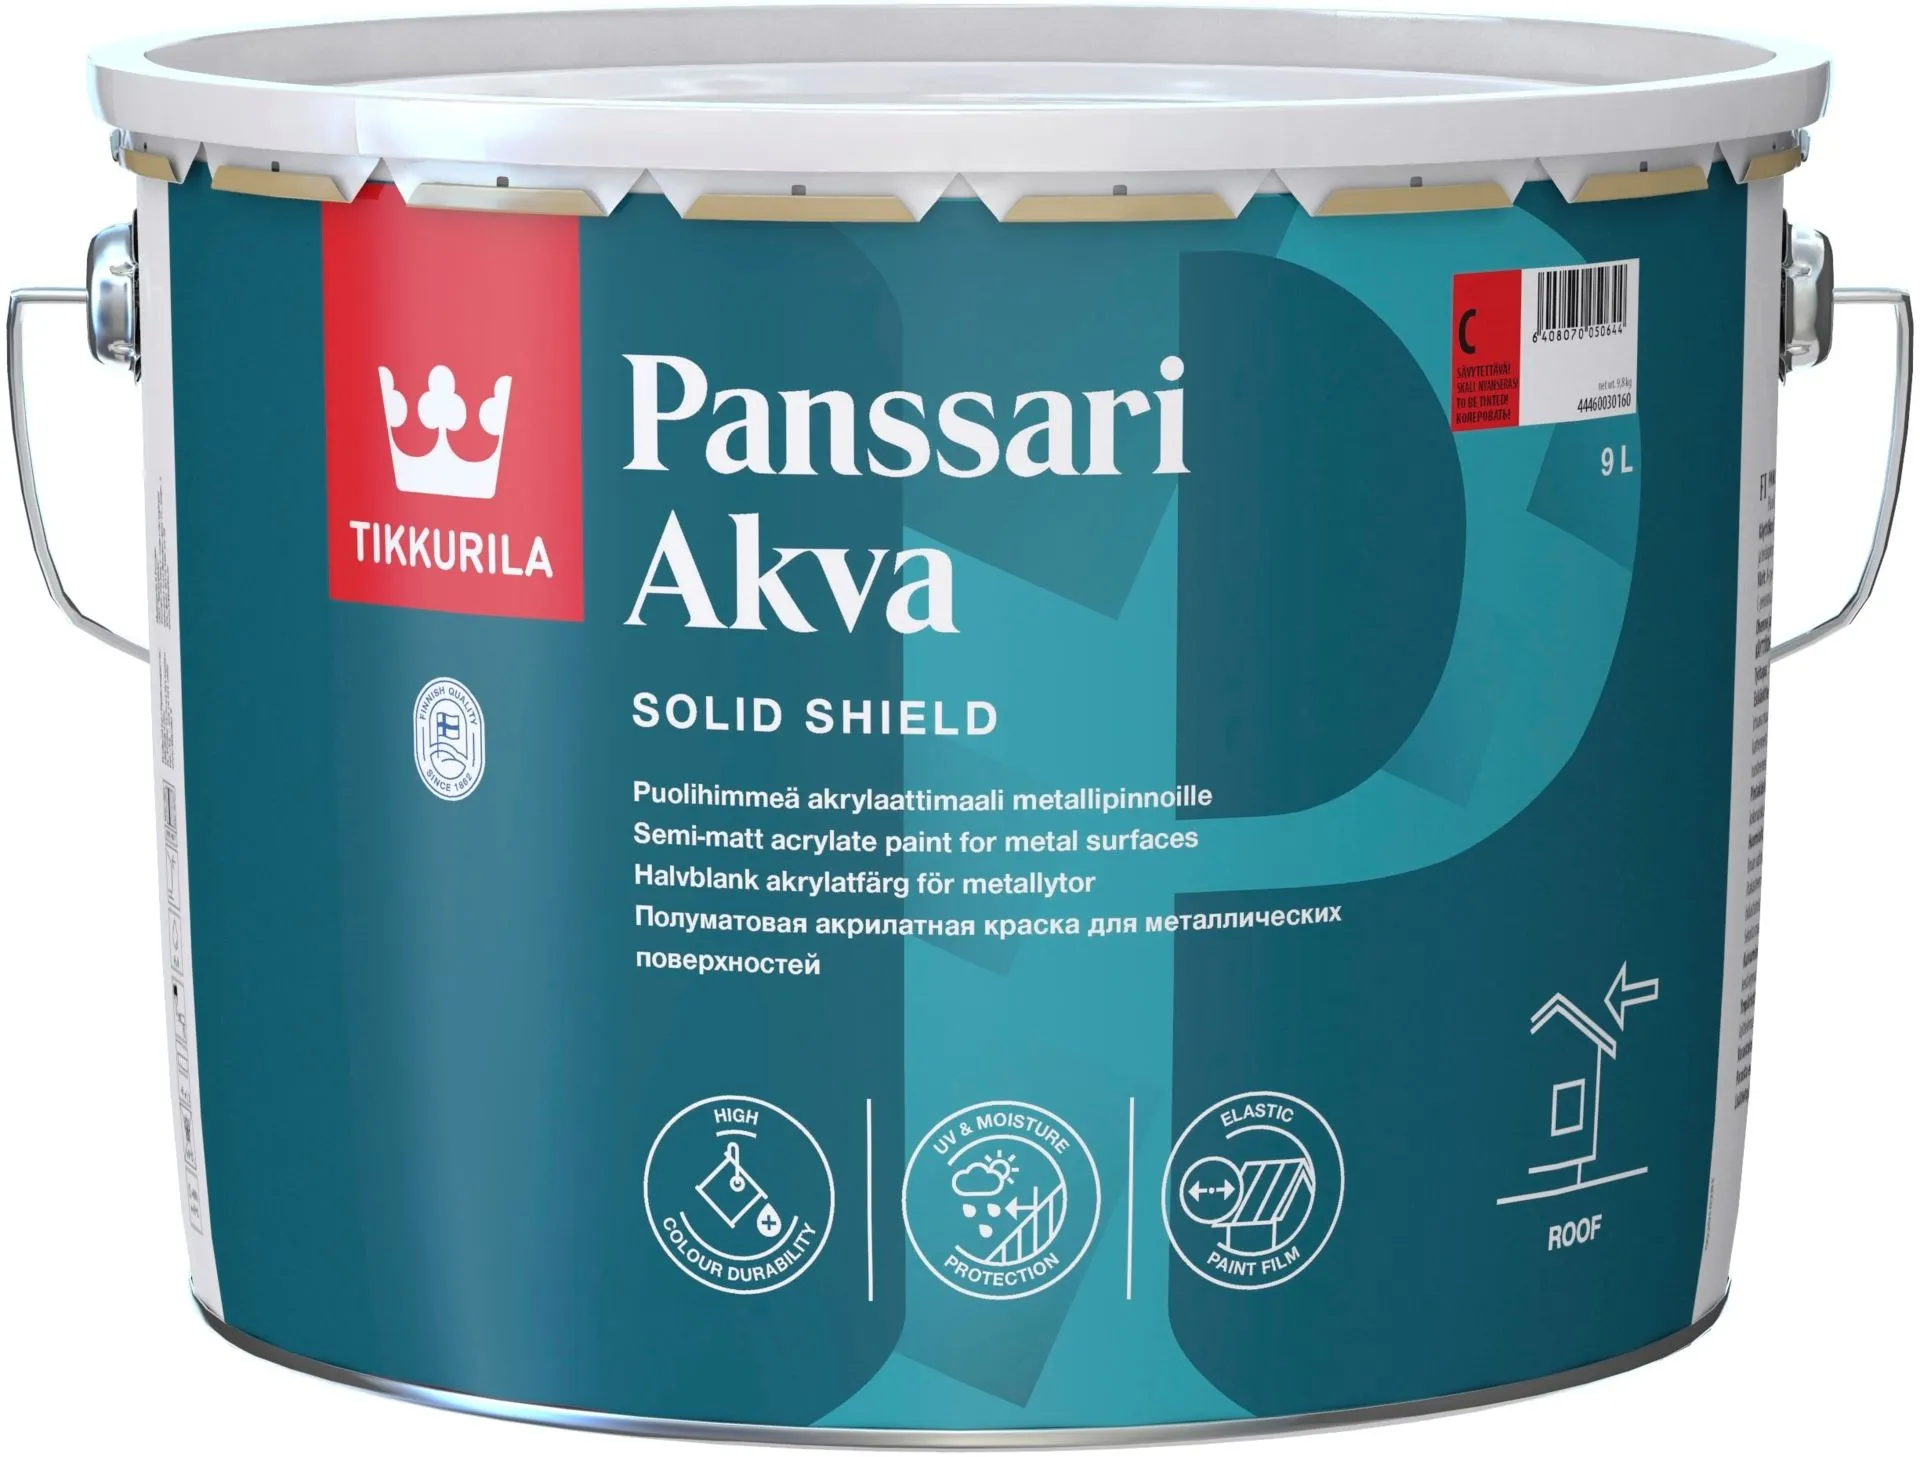 Tikkurila Panssari Akva akrylaattimaali metallipinnoille 9l A valkoinen sävytettävissä puolihimmeä